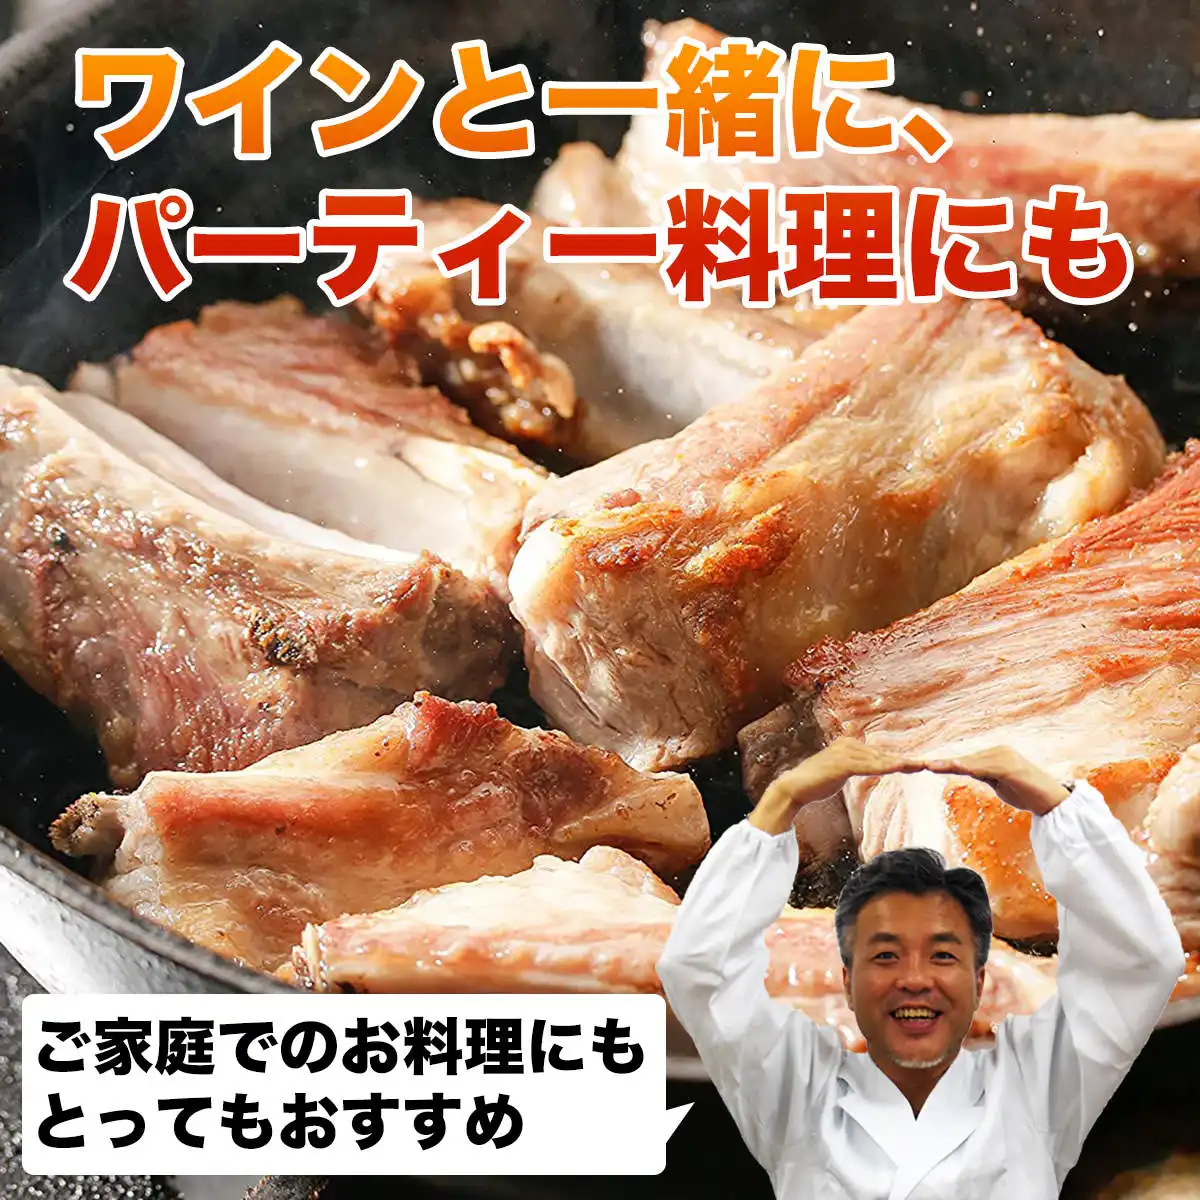 スペアリブ + 松阪牛ハンバーグ6個